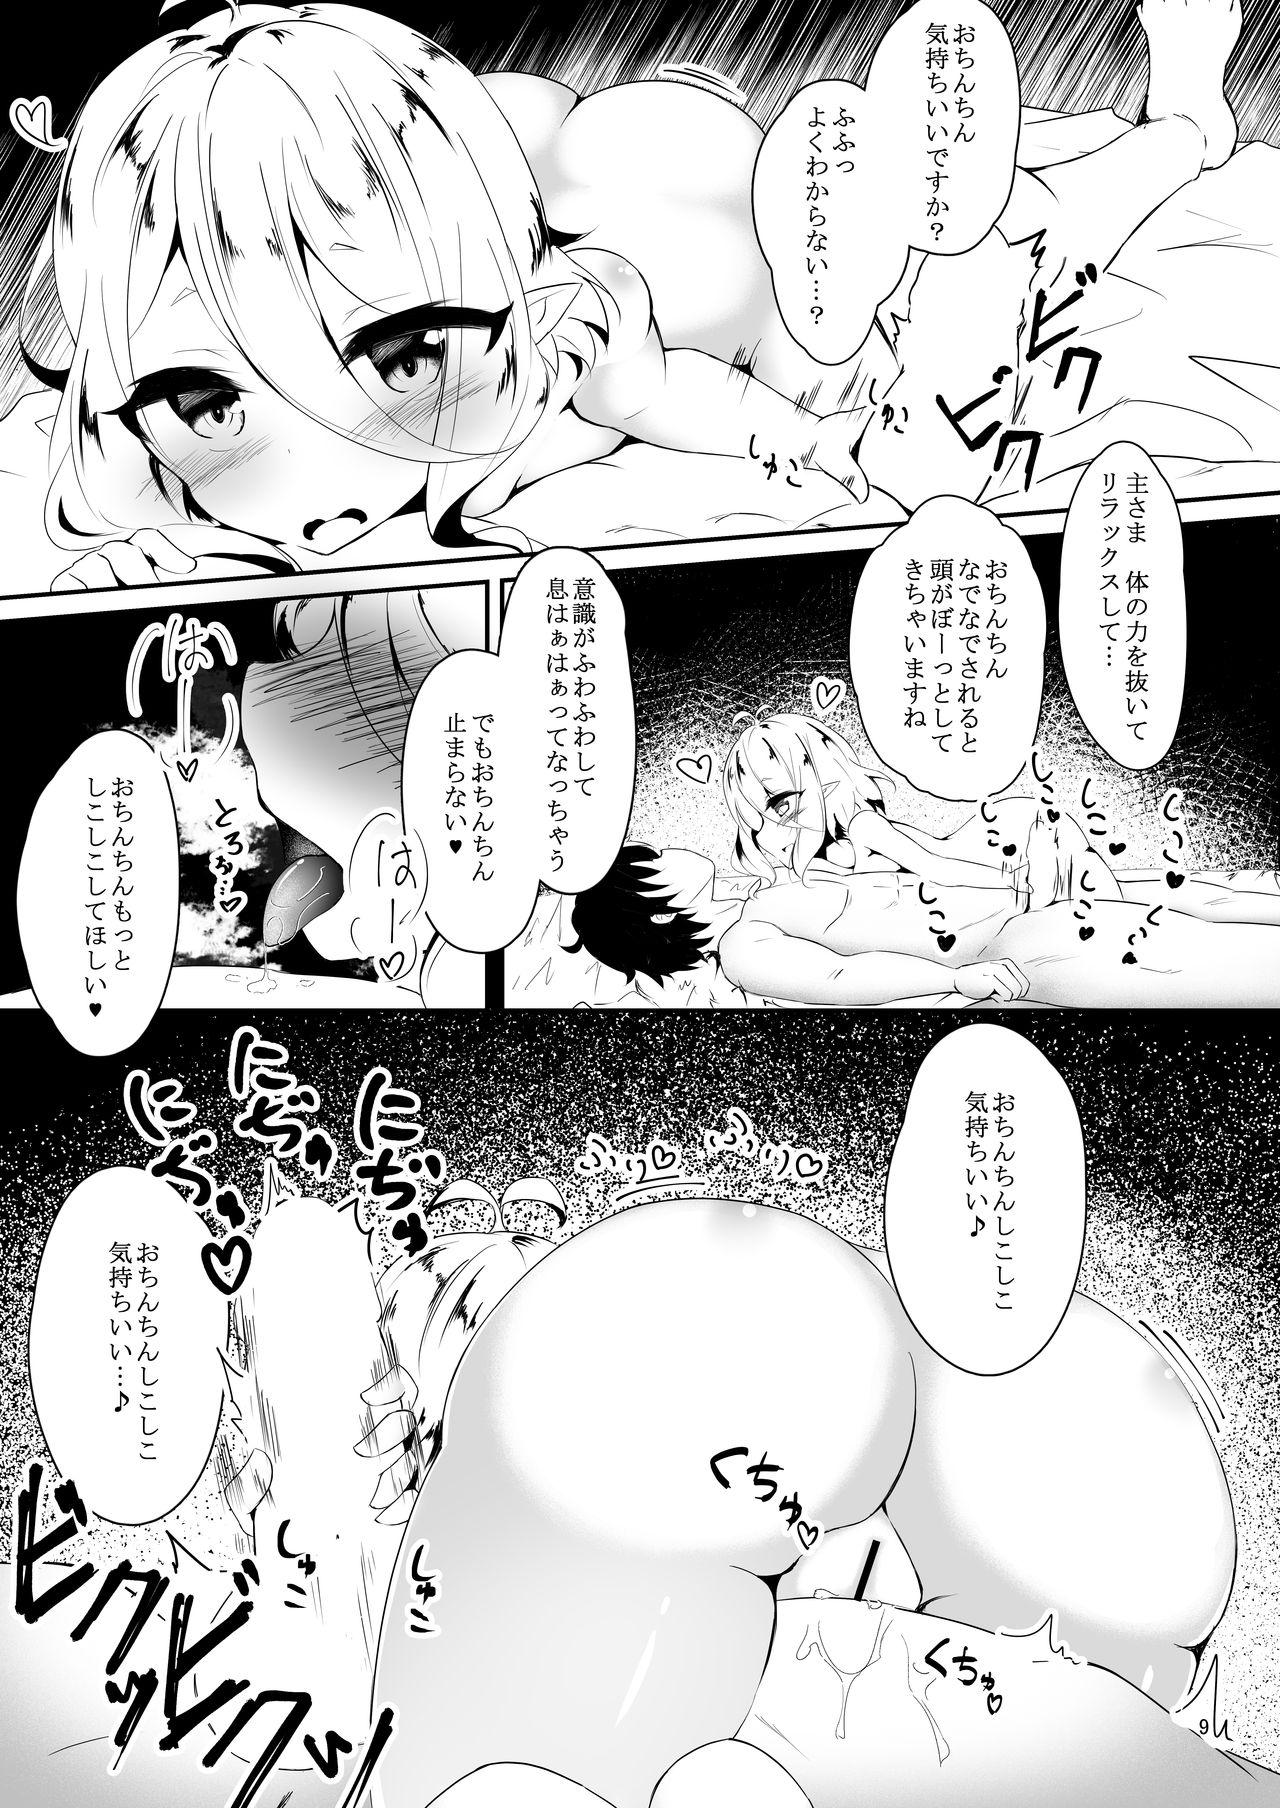 Suckingdick Kokkoro to Hajimete Ecchi! - Princess connect Alone - Page 8